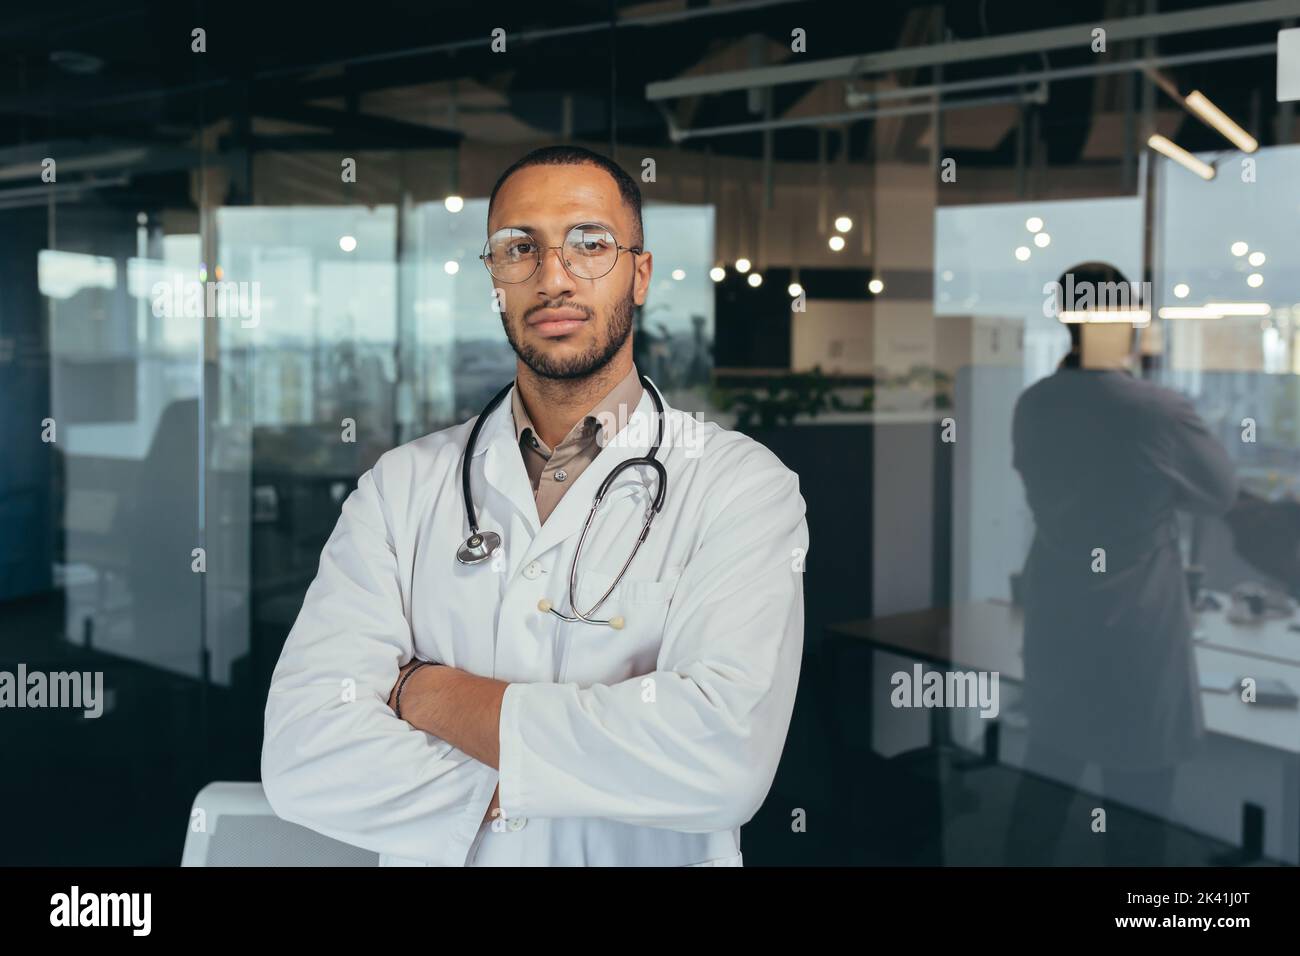 Portrait d'un médecin sérieux et réussi, homme en robe médicale regardant attentivement la caméra, travaillant à l'intérieur d'un immeuble de bureau moderne. Banque D'Images